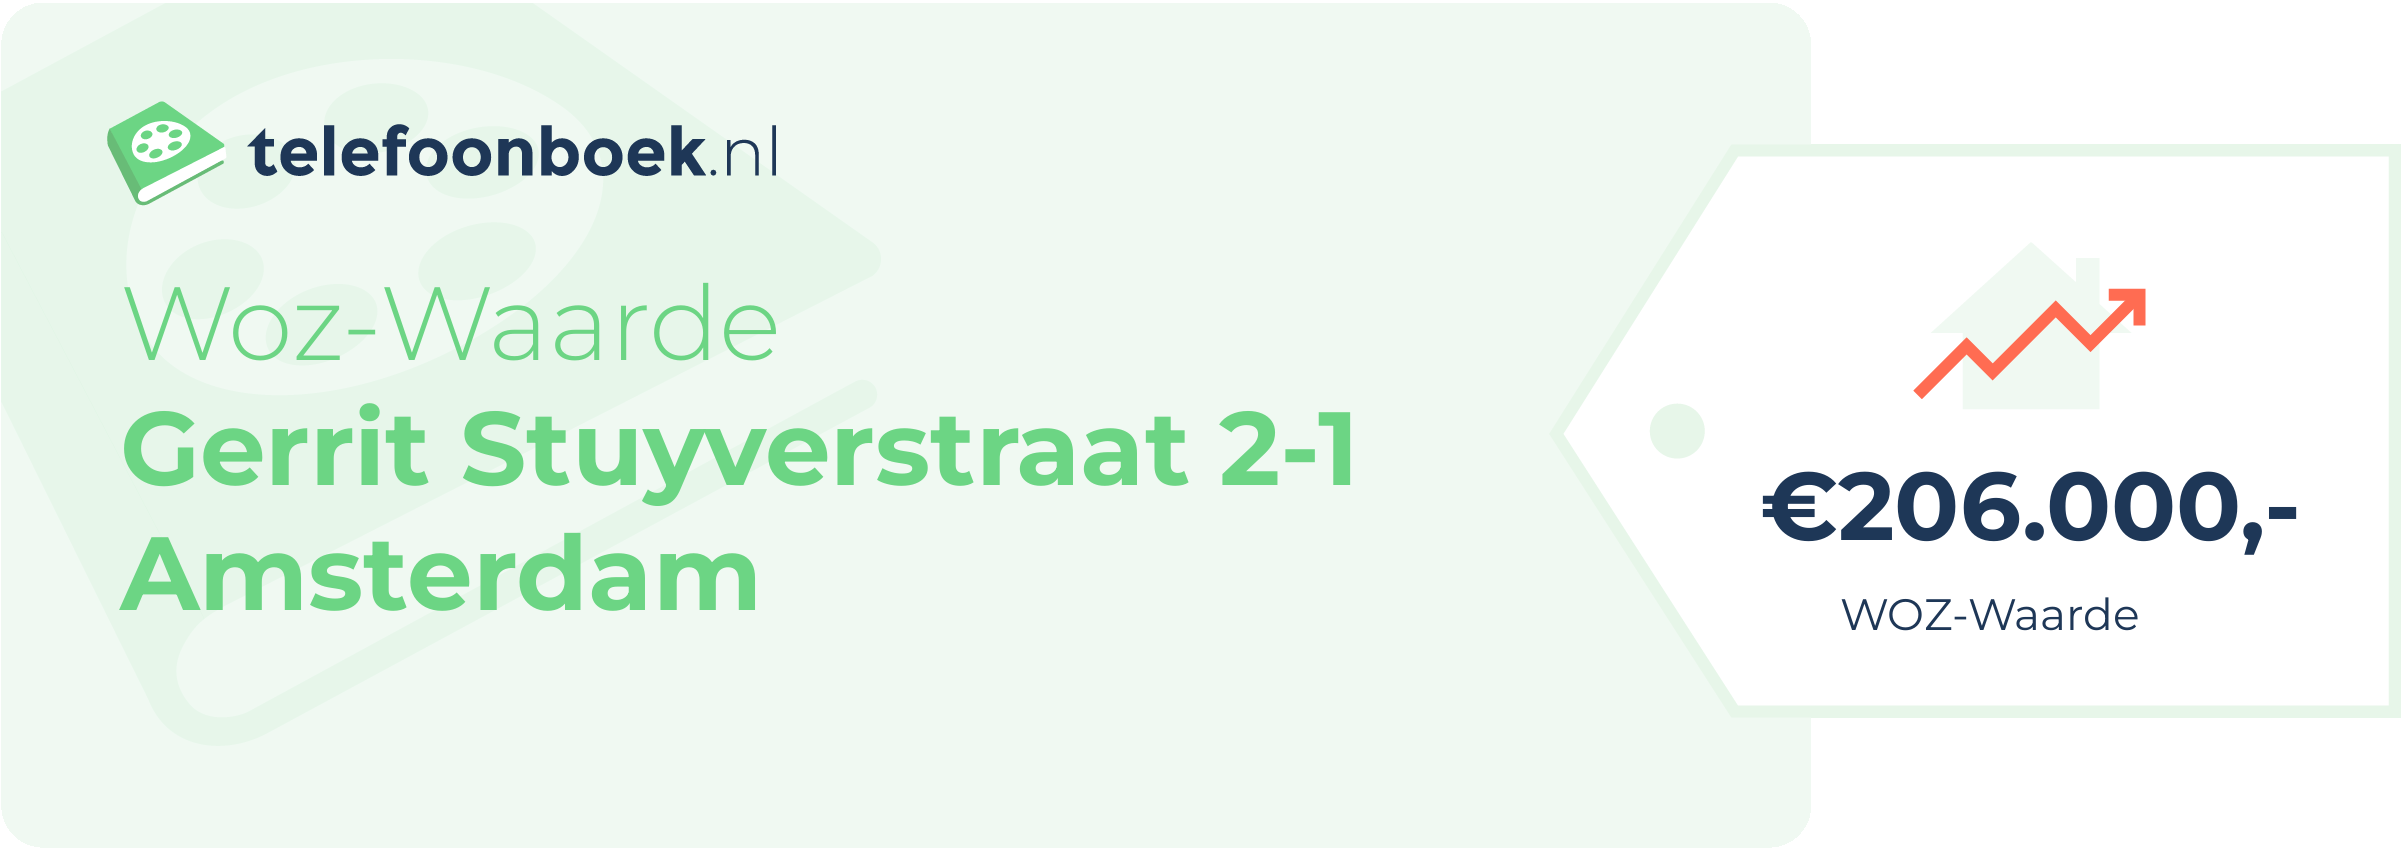 WOZ-waarde Gerrit Stuyverstraat 2-1 Amsterdam